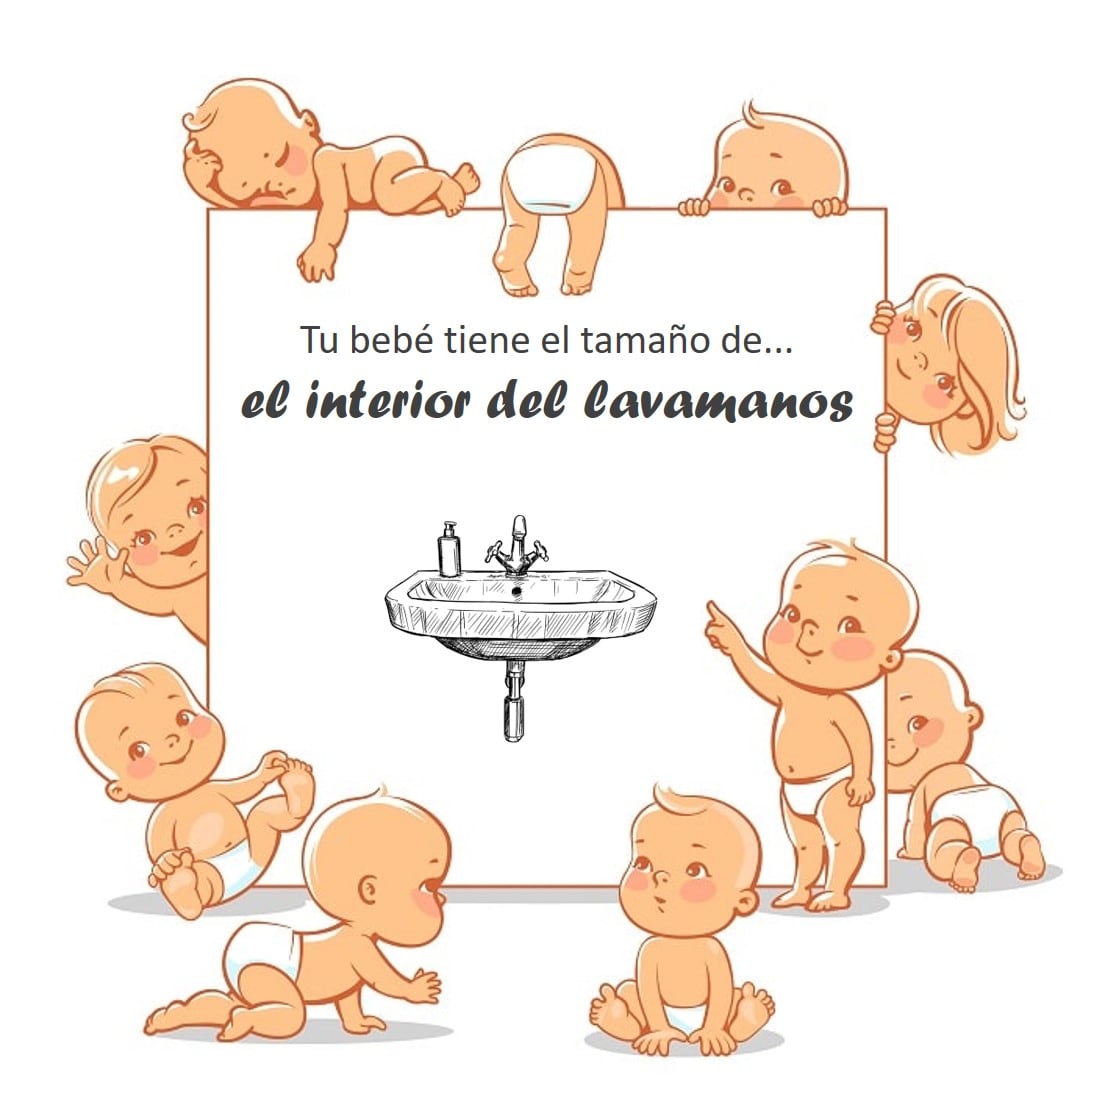 subterraneo Inspirar el primero Semana 36 de embarazo: cambios, síntomas y consejos